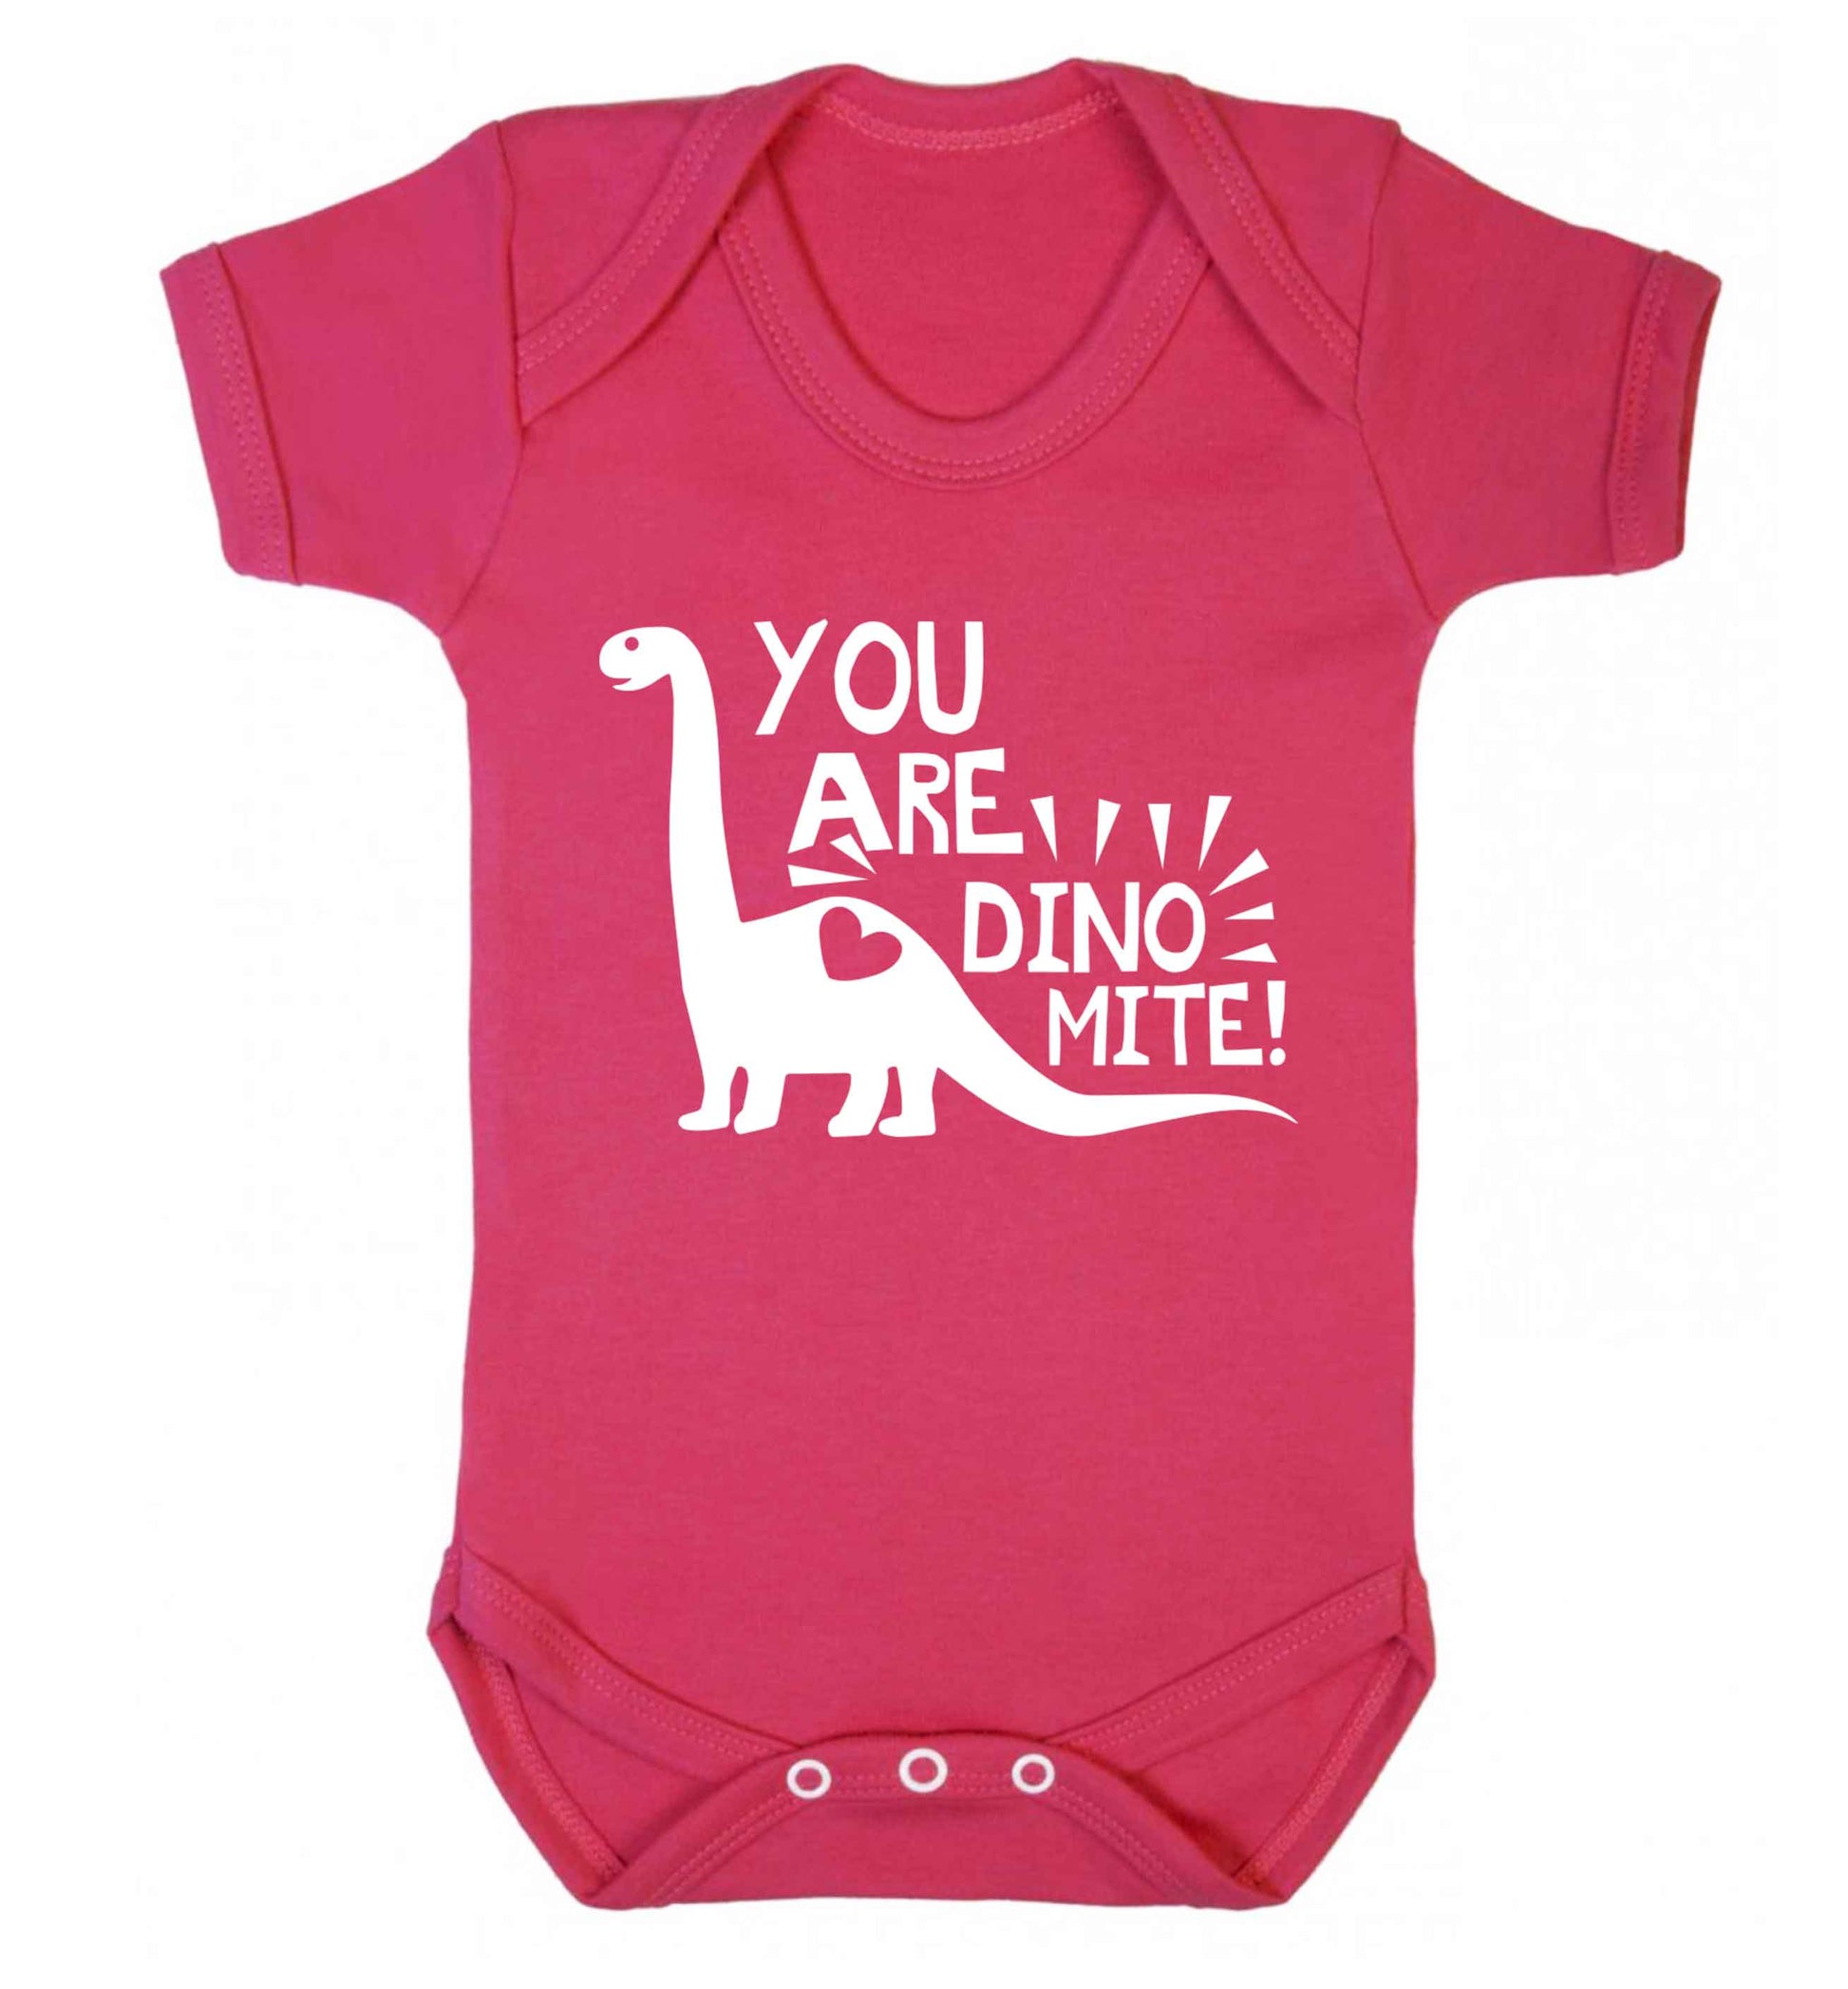 You are dinomite! Baby Vest dark pink 18-24 months